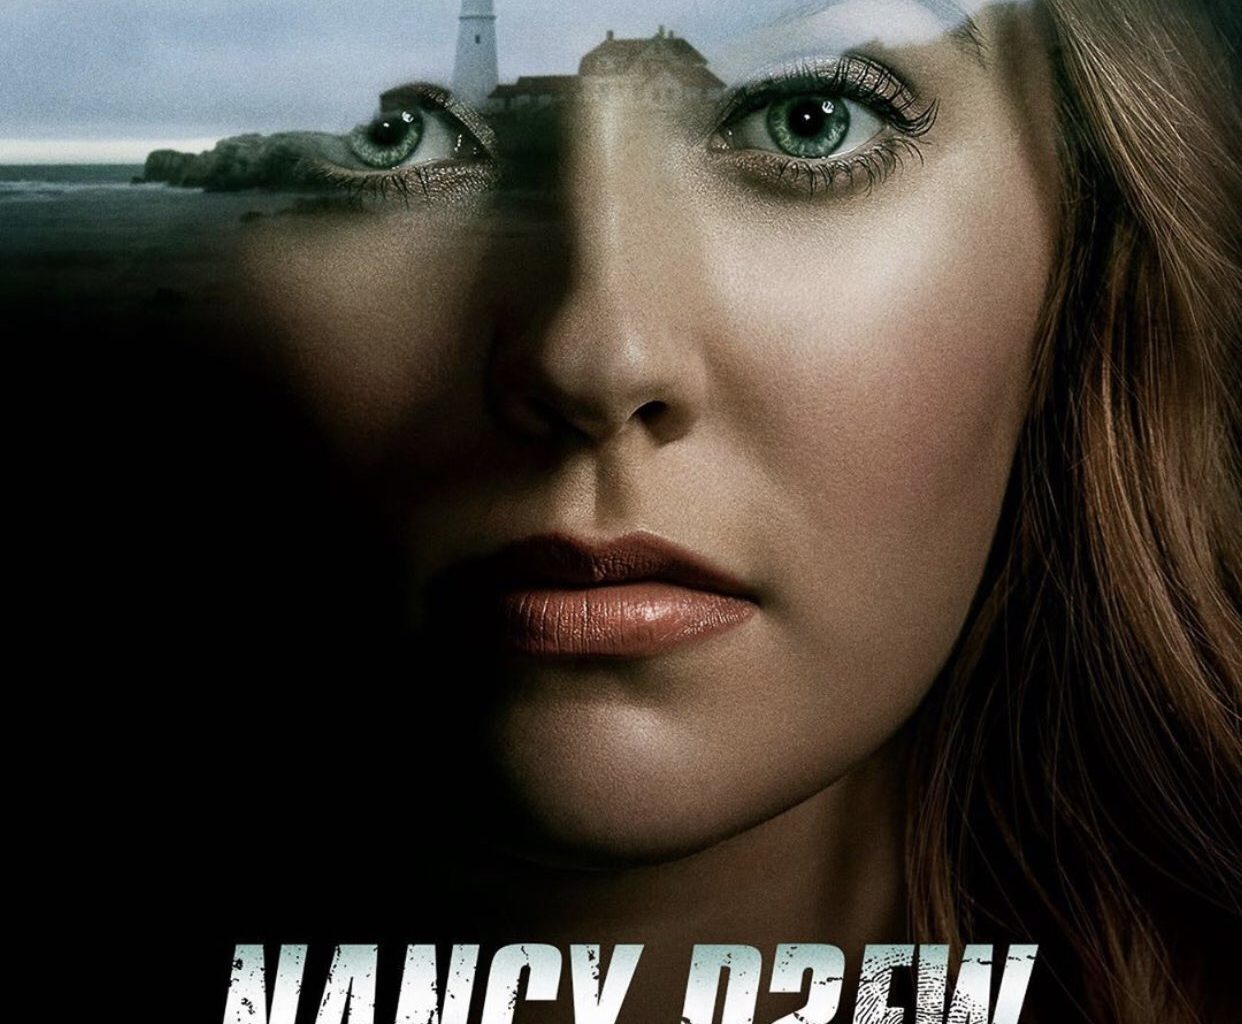 Nancy Drew Season 3 Episode 5 Release Date